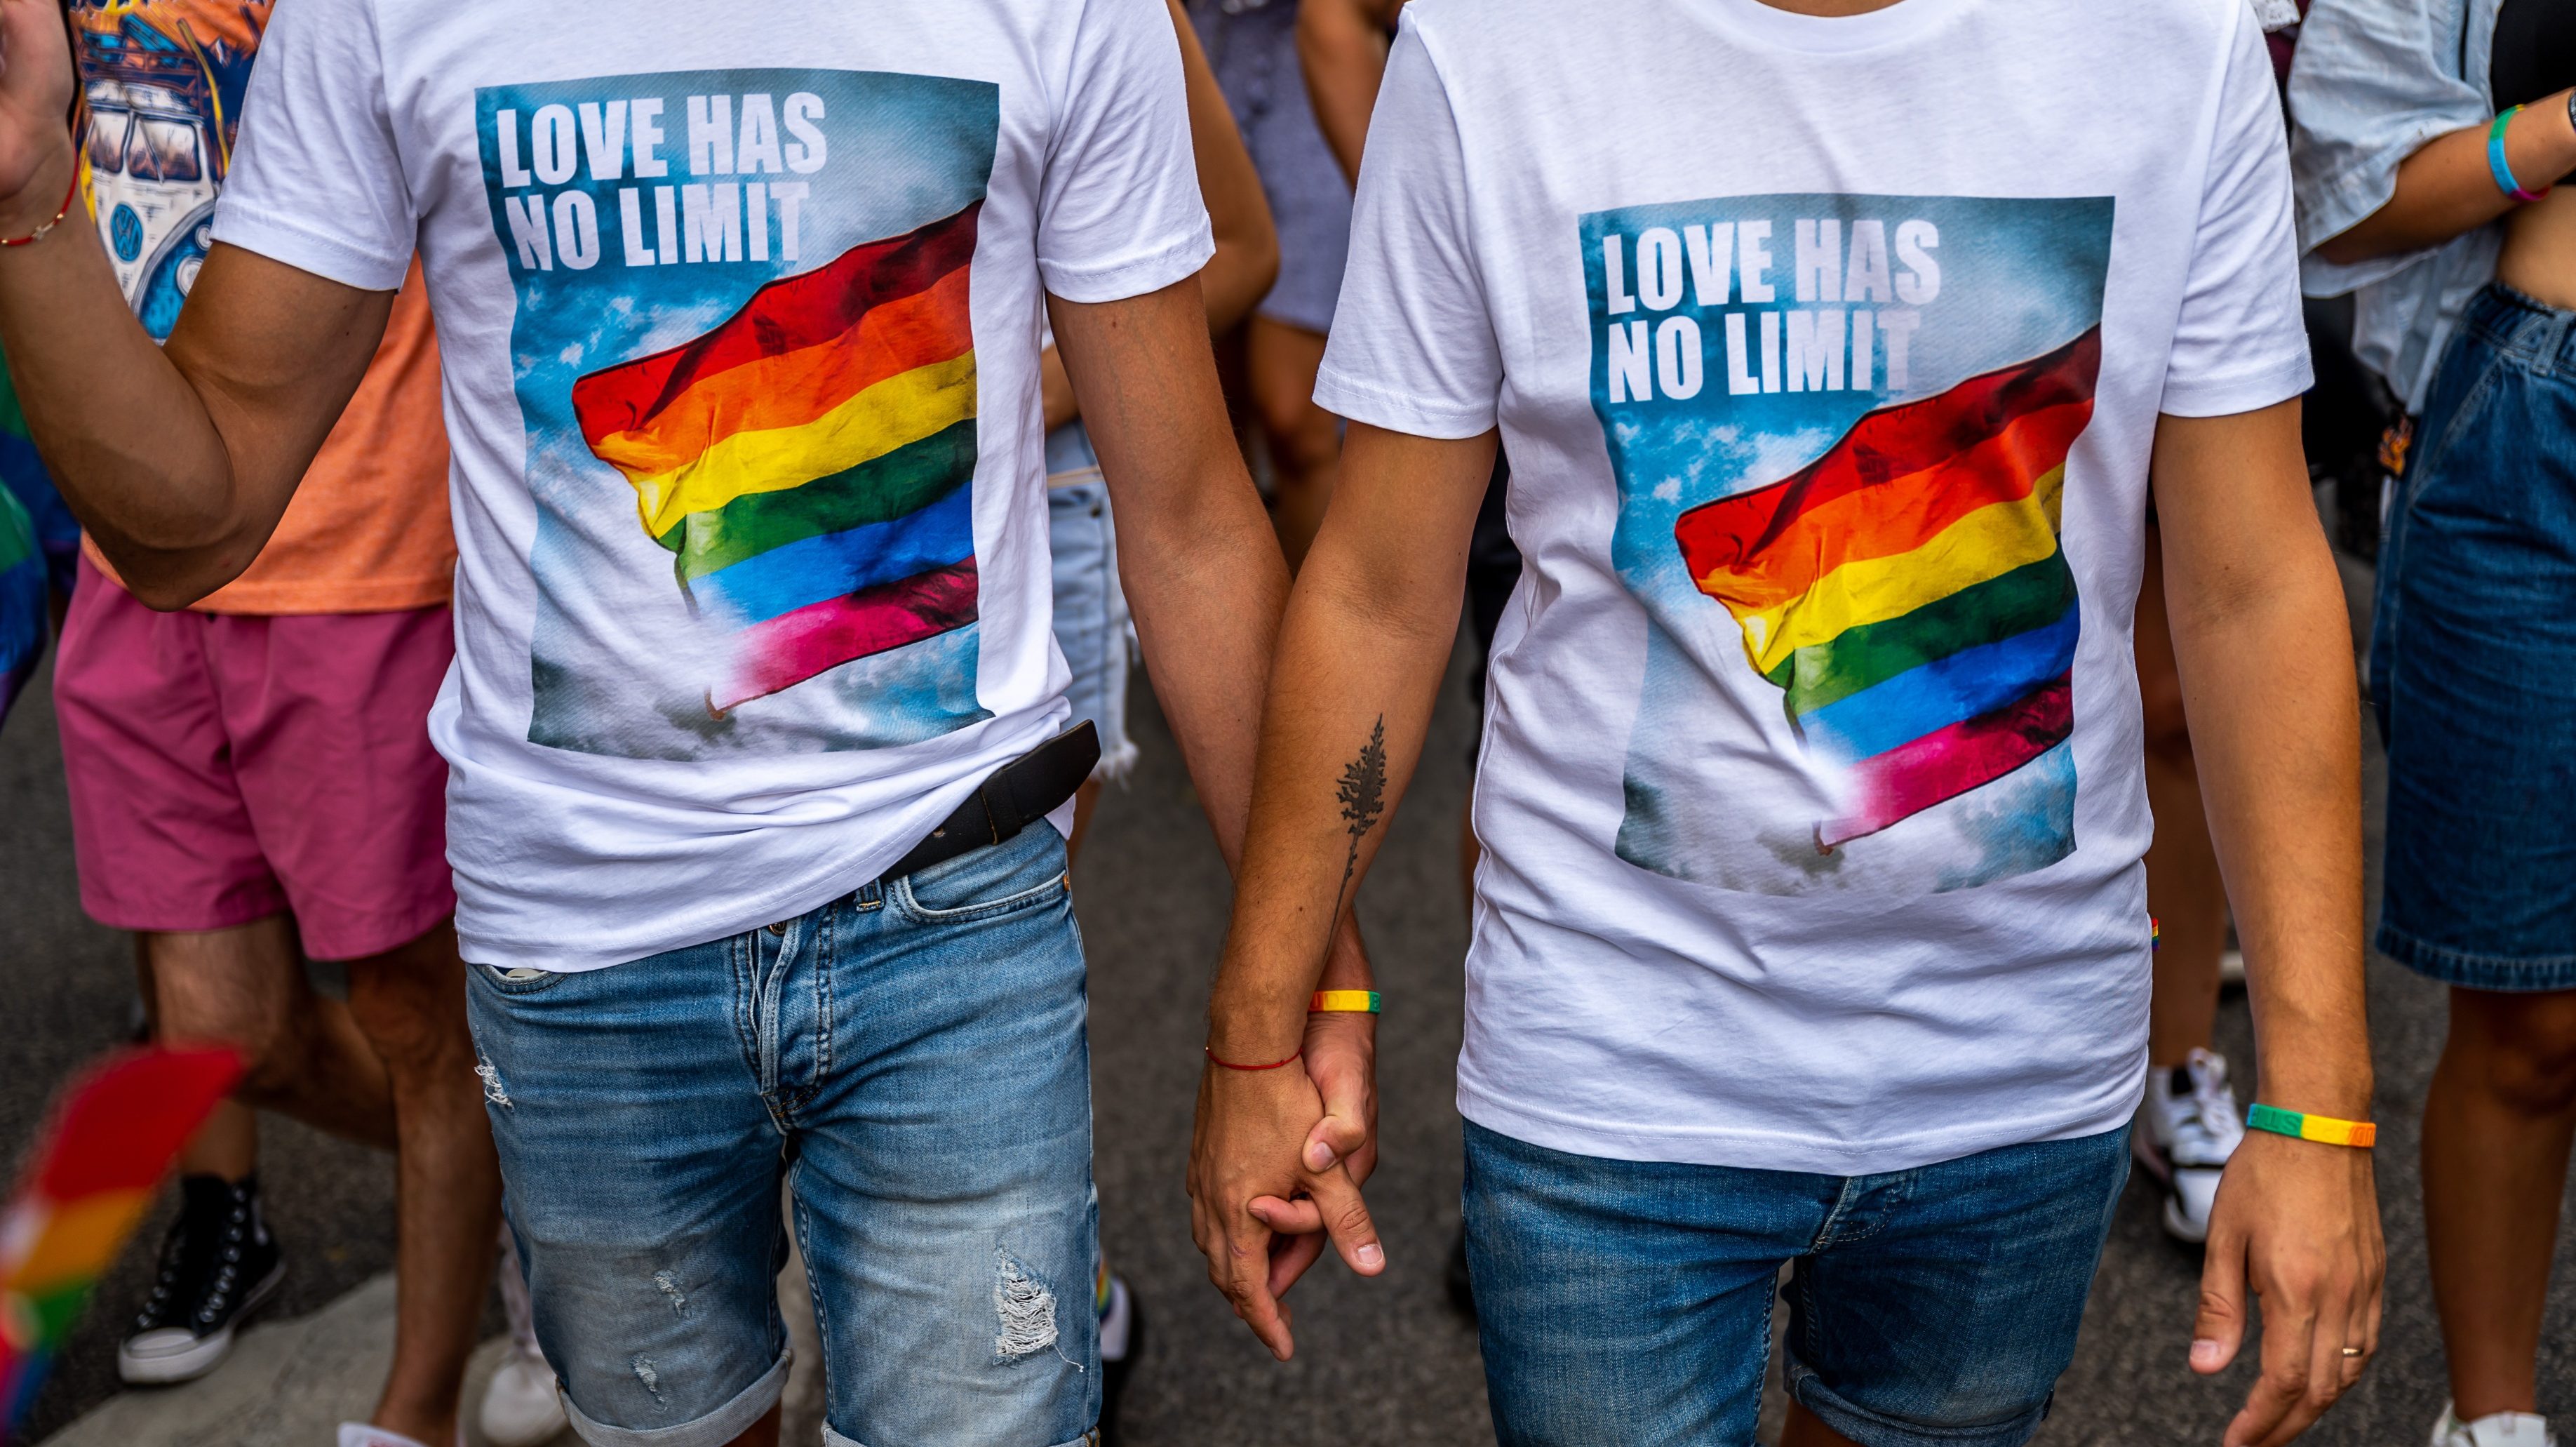 A Mi Hazánk megelőzte a Budapest Pride szervezőit, a párt lefoglalta az Andrássy utat a felvonulás napjára